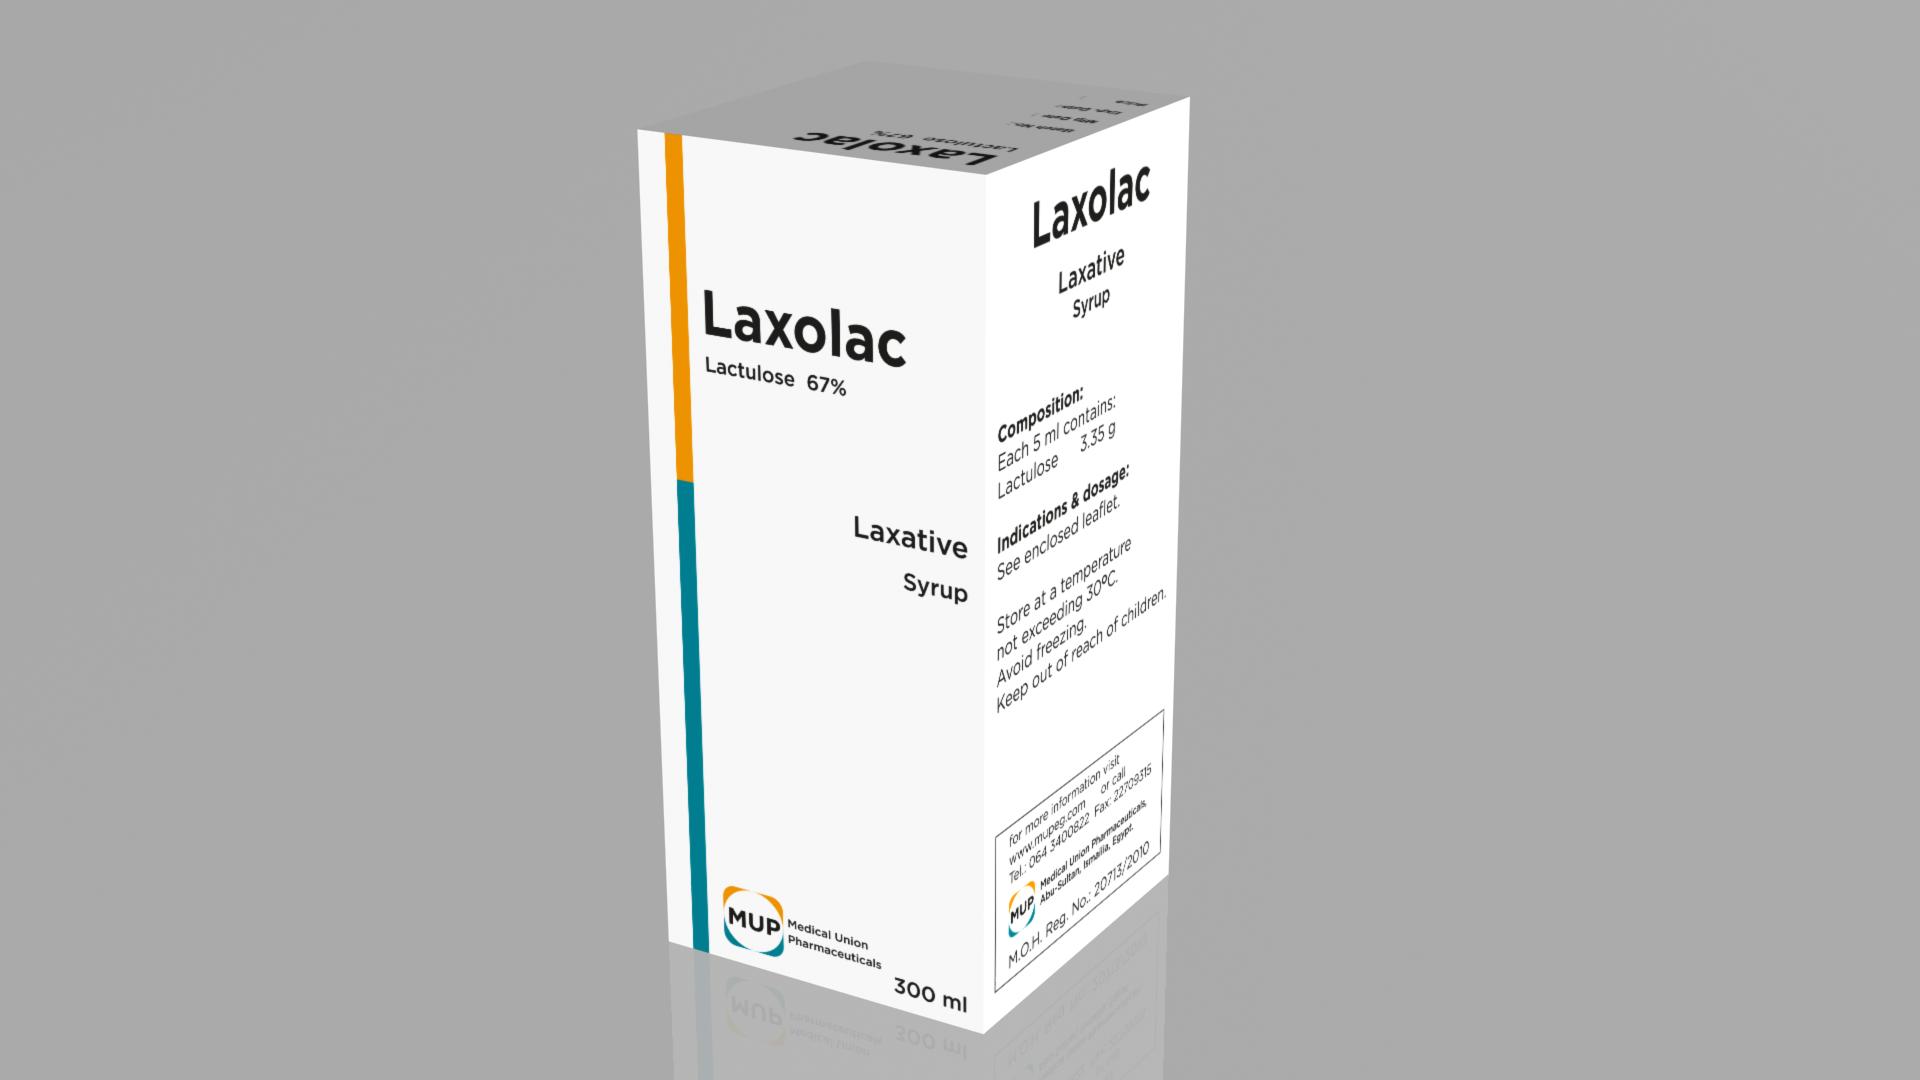 علاج الإمساك الشديد بعقار لاكسولاك المعروف في الصيدليات